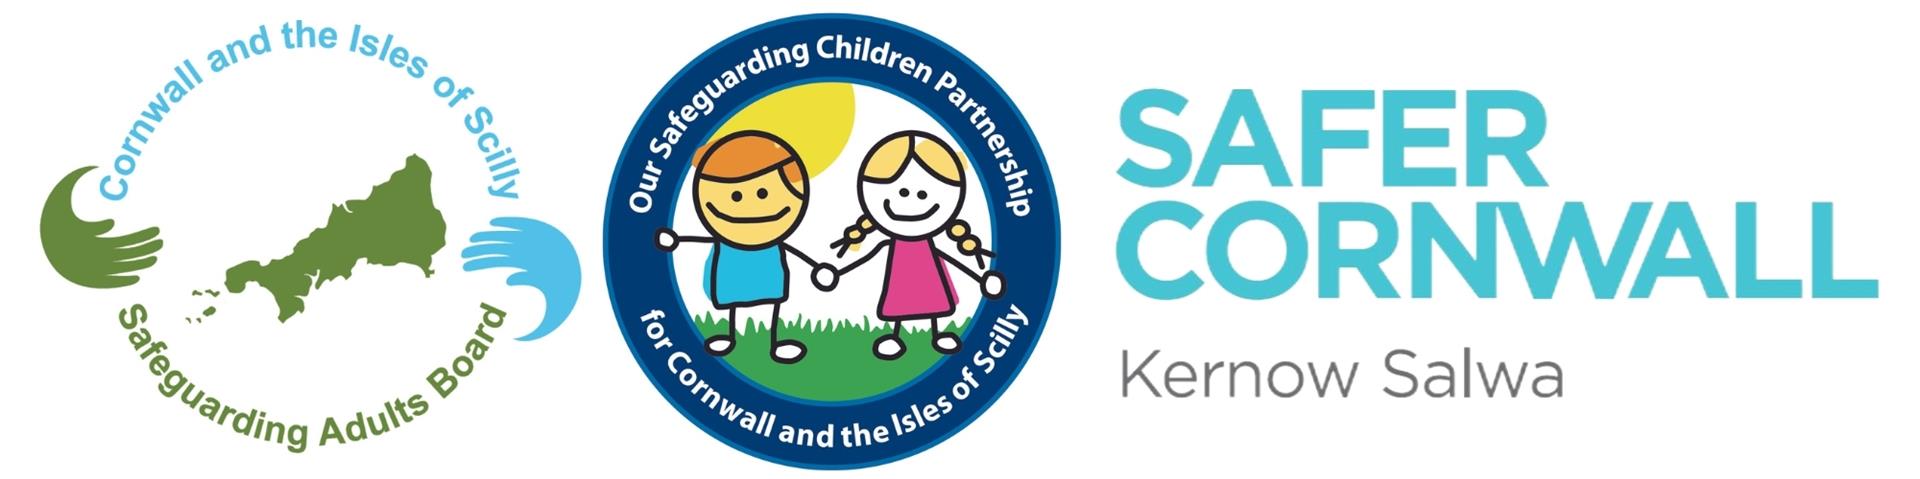 SAB, OSCP, Safer Cornwall logos